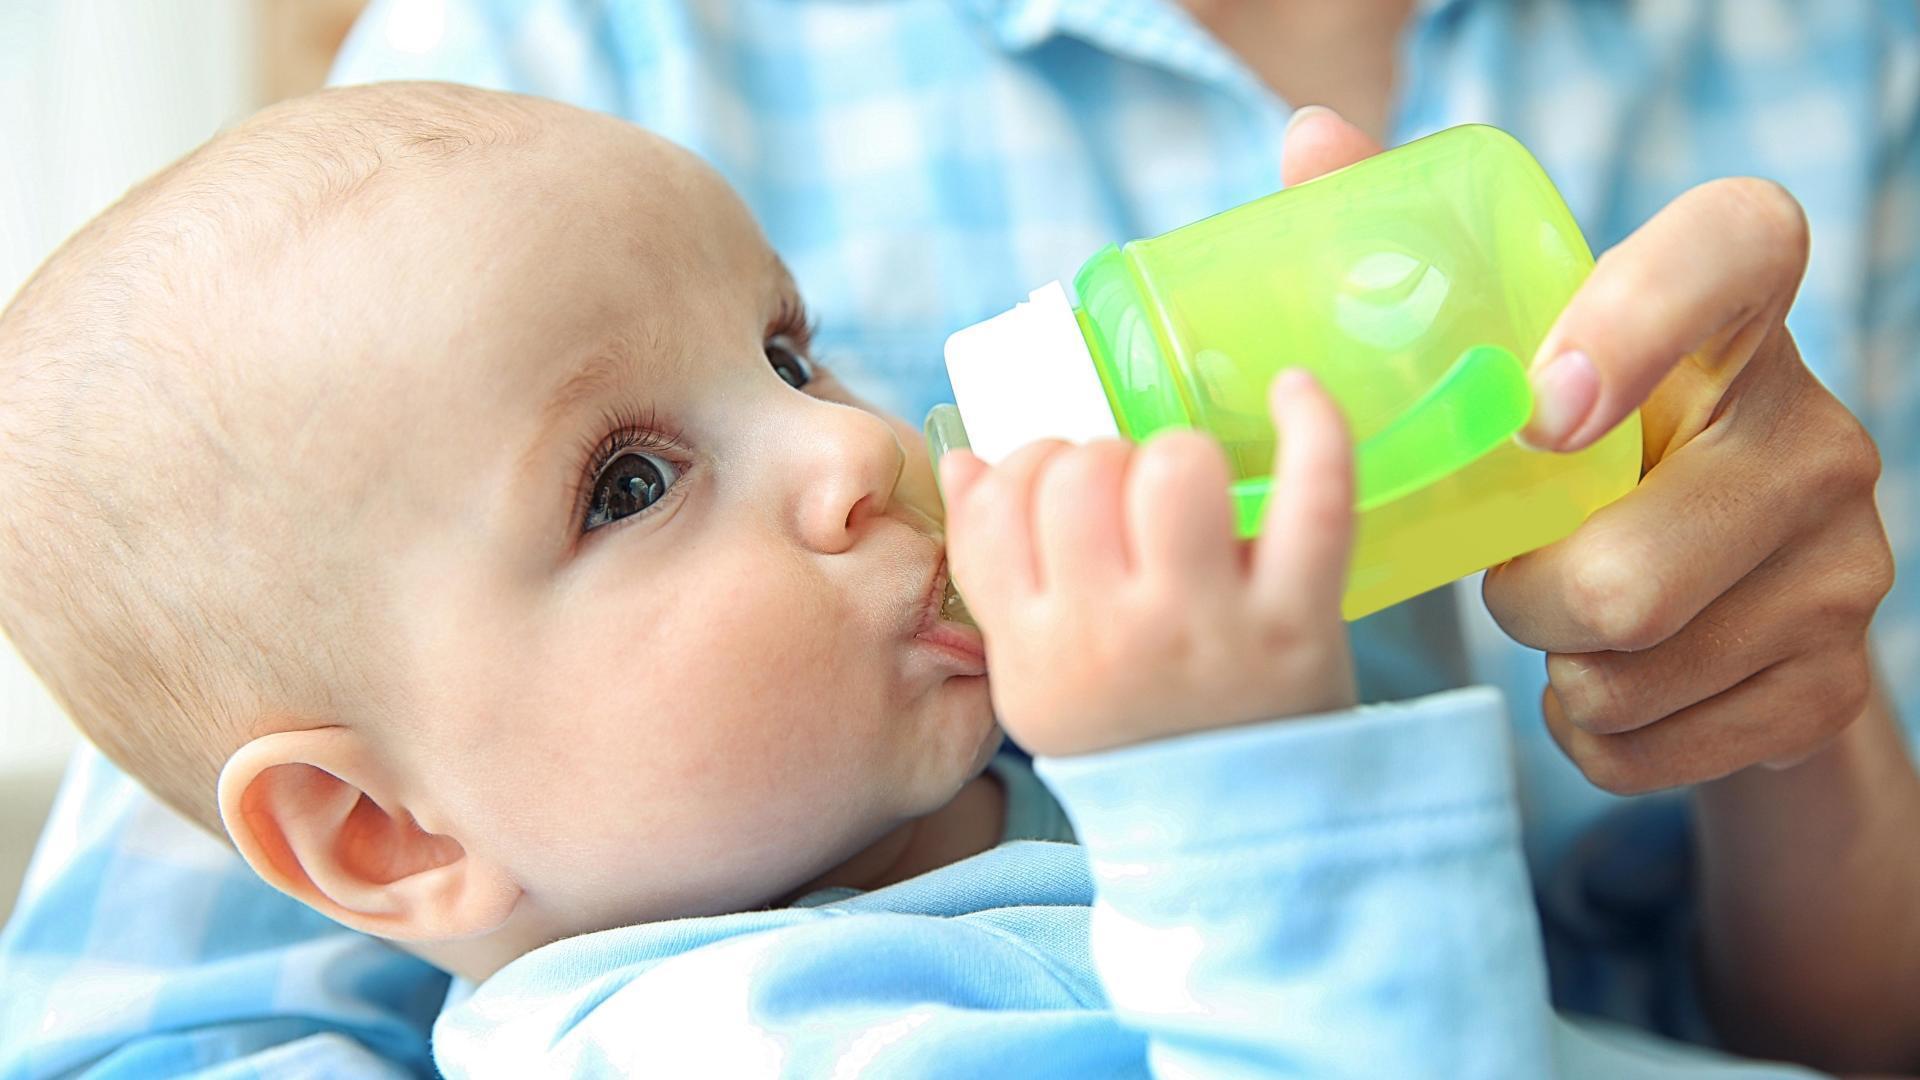 Co dát k pití kojenci?